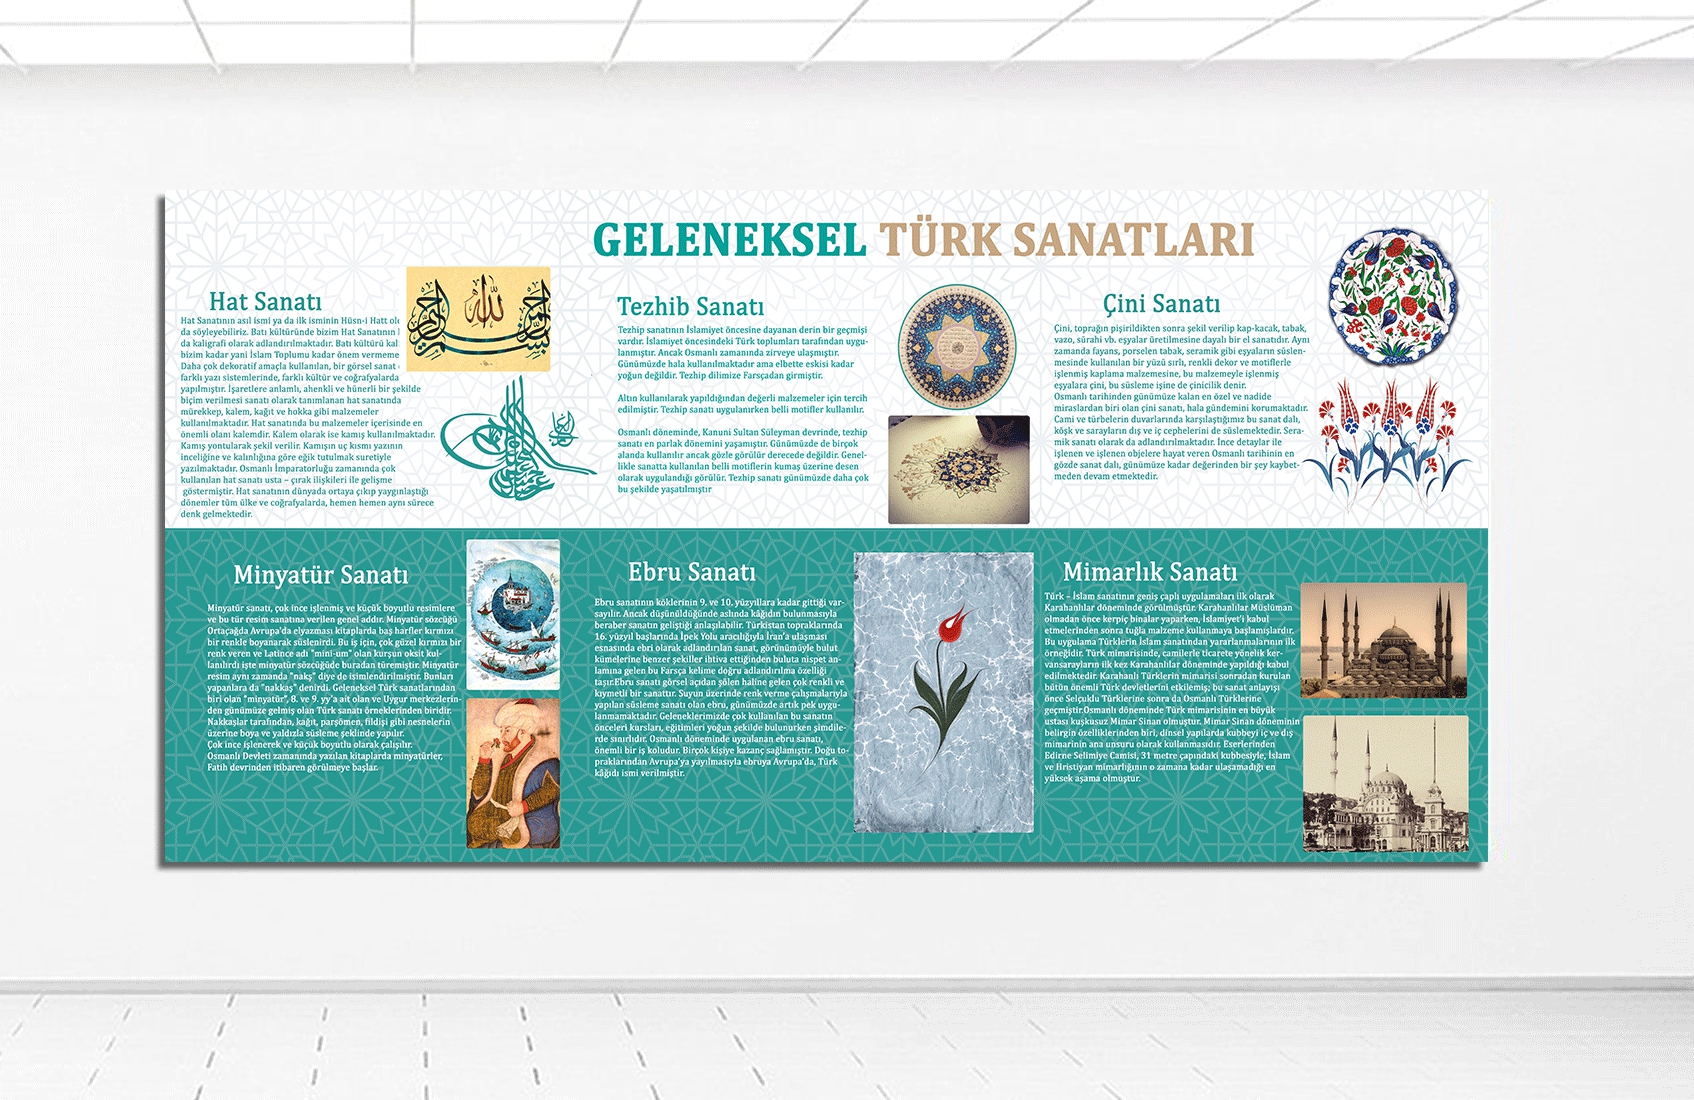 Geleneksel Türk Sanatları